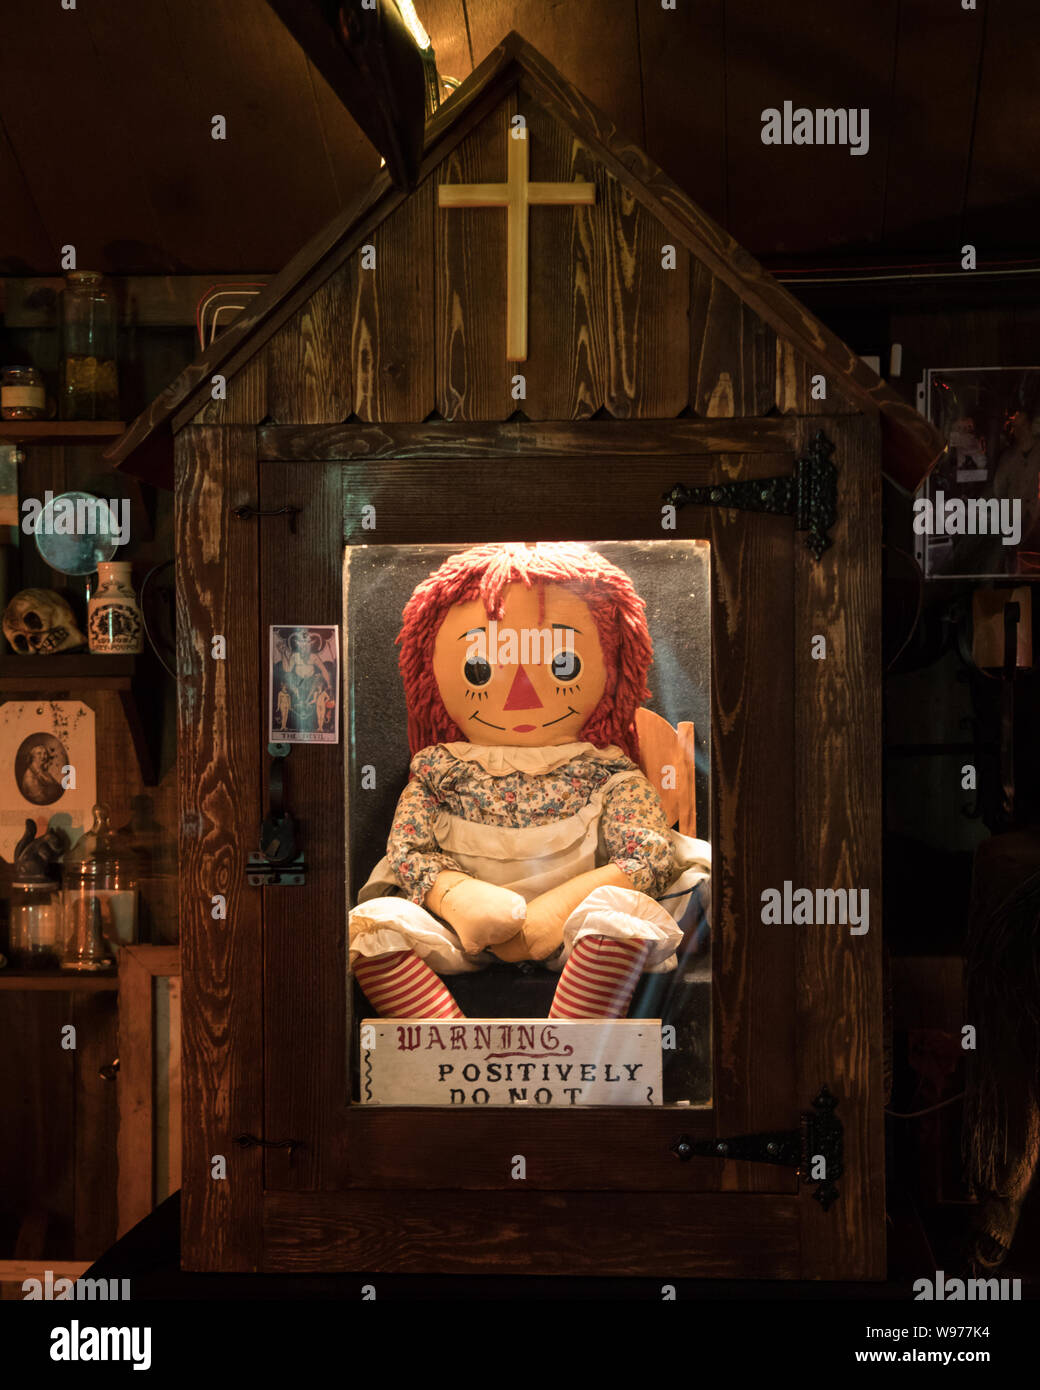 Die Echten Annabelle Puppe Die In Der Warren Okkulten Museum In Monroe Connecticut Befindet Dies Ist Die Puppe Die Alle 3 Annabelle Filme Auf Basieren Stockfotografie Alamy